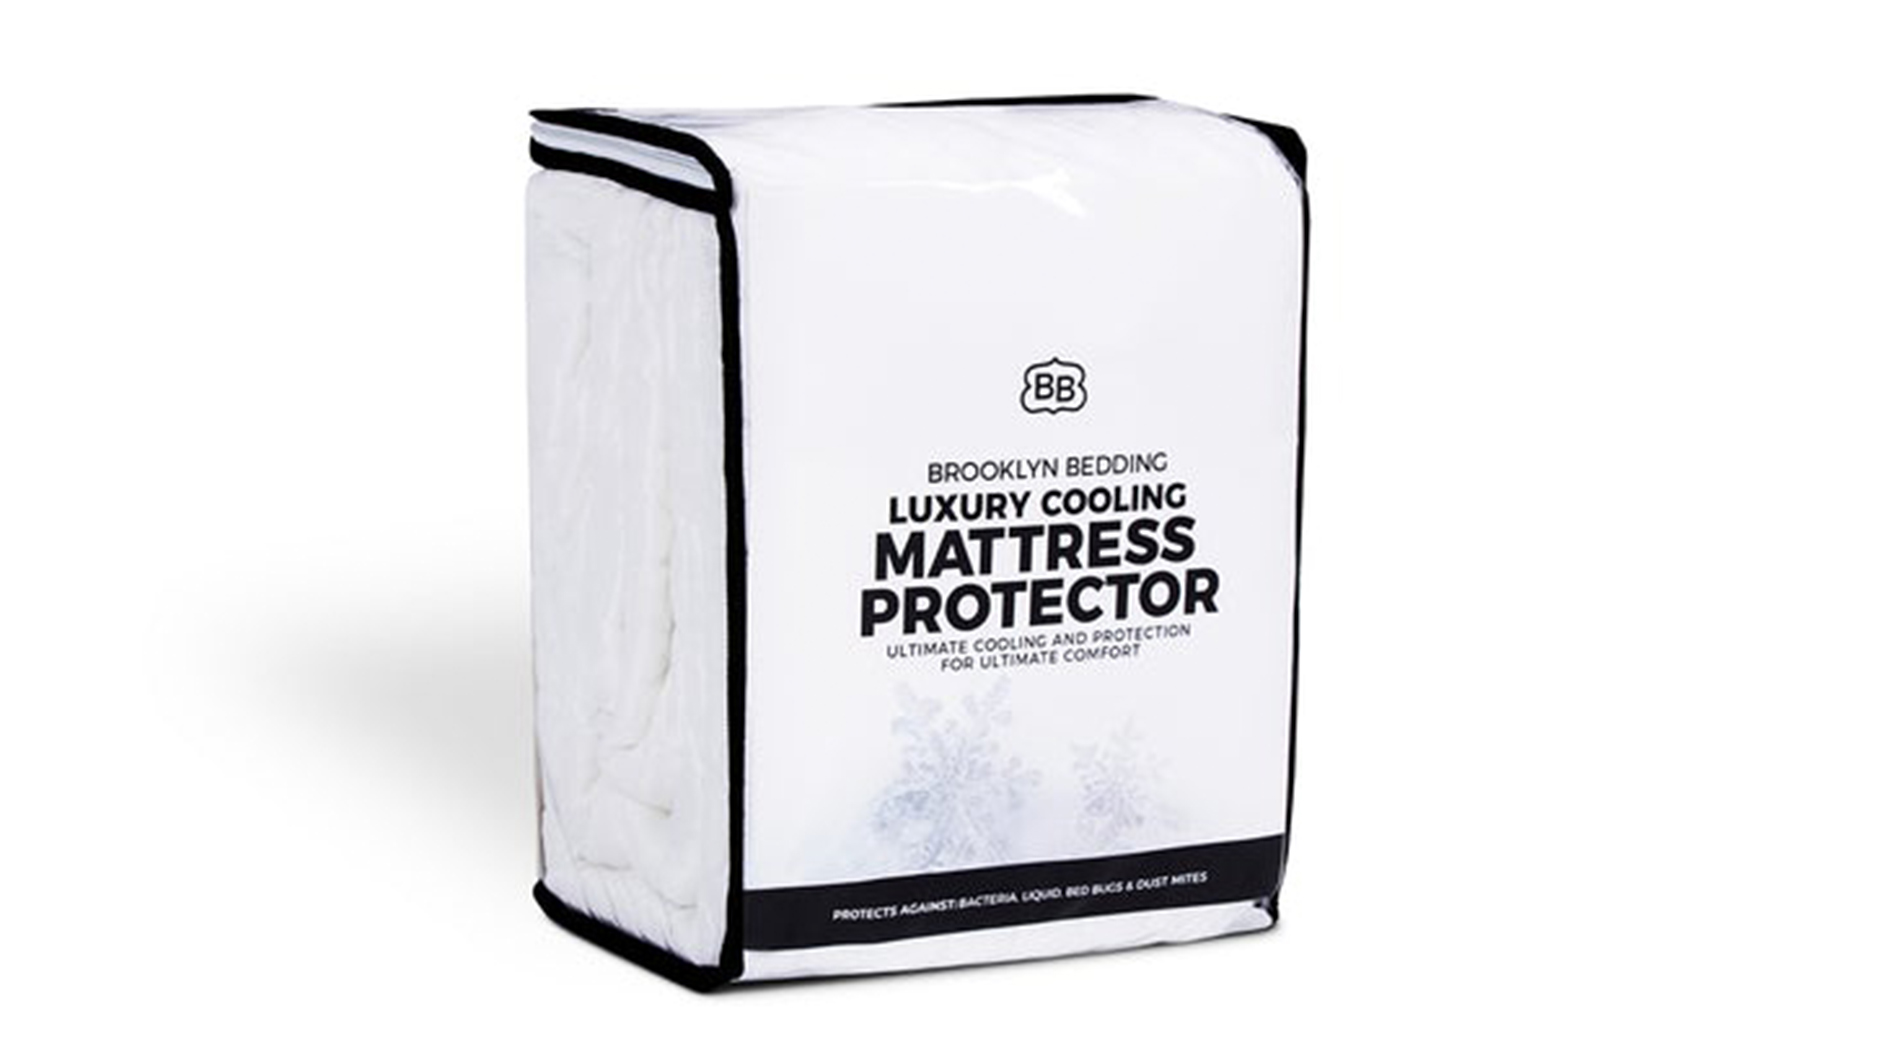 2ft 3 inch mattress protectors